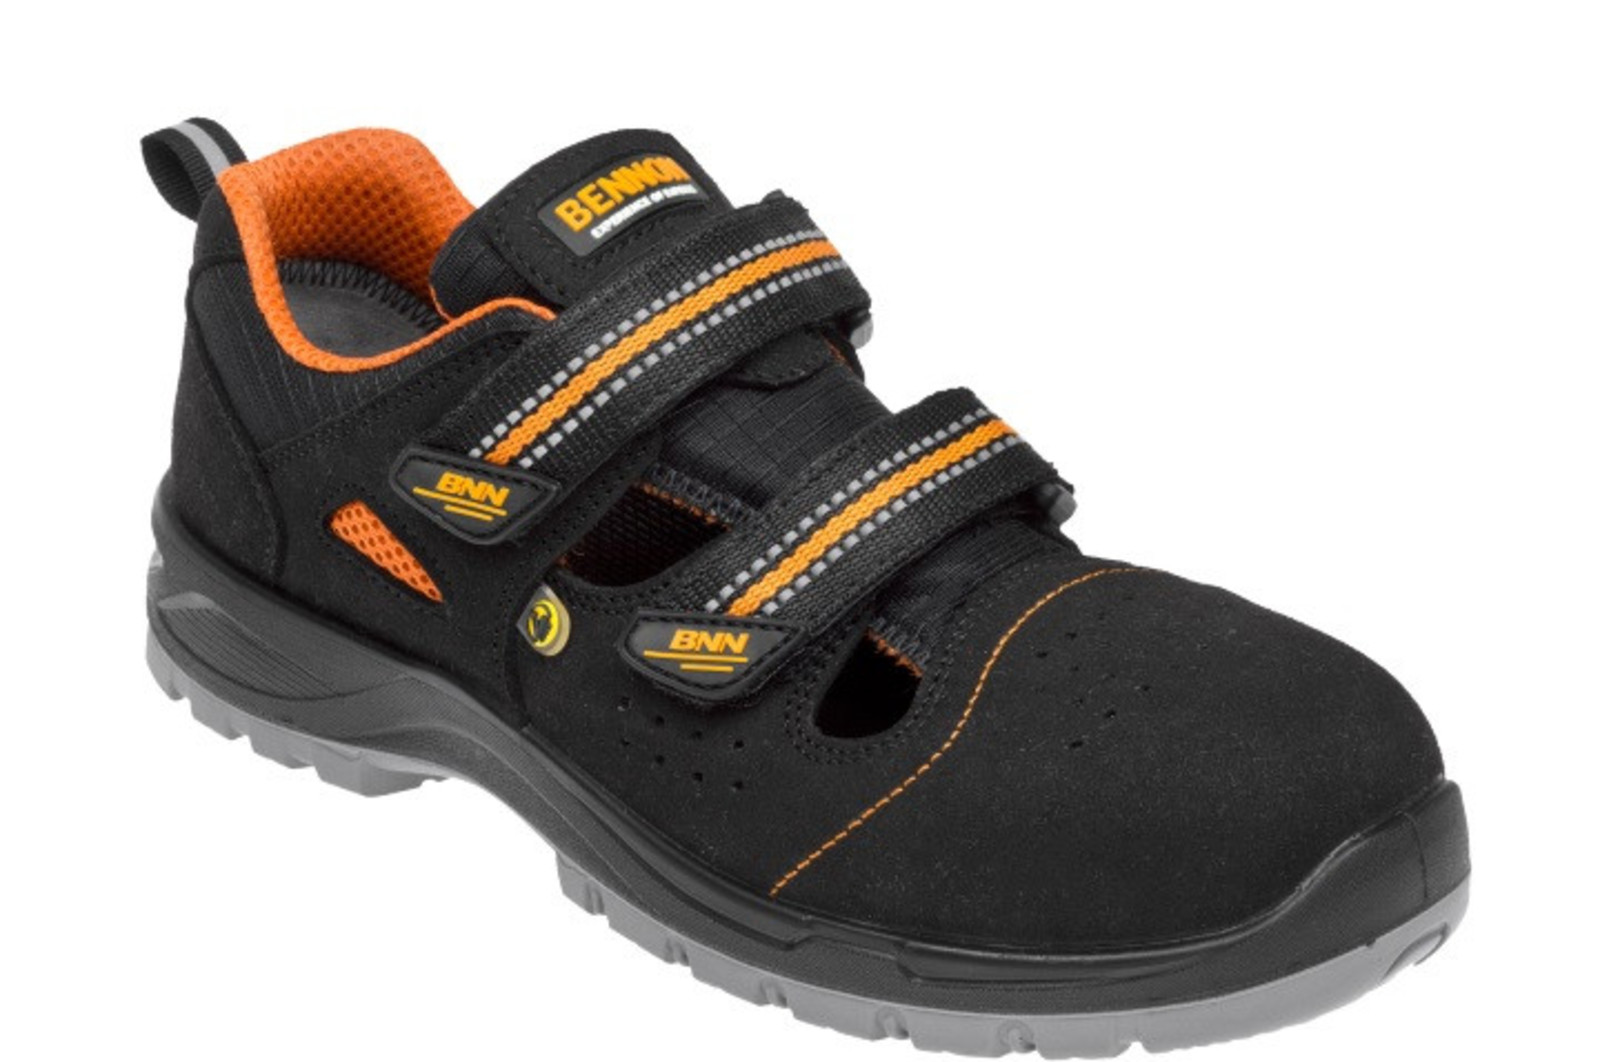 Bezpečnostné sandále Bennon Nux S1P ESD metal free - veľkosť: 41, farba: čierna